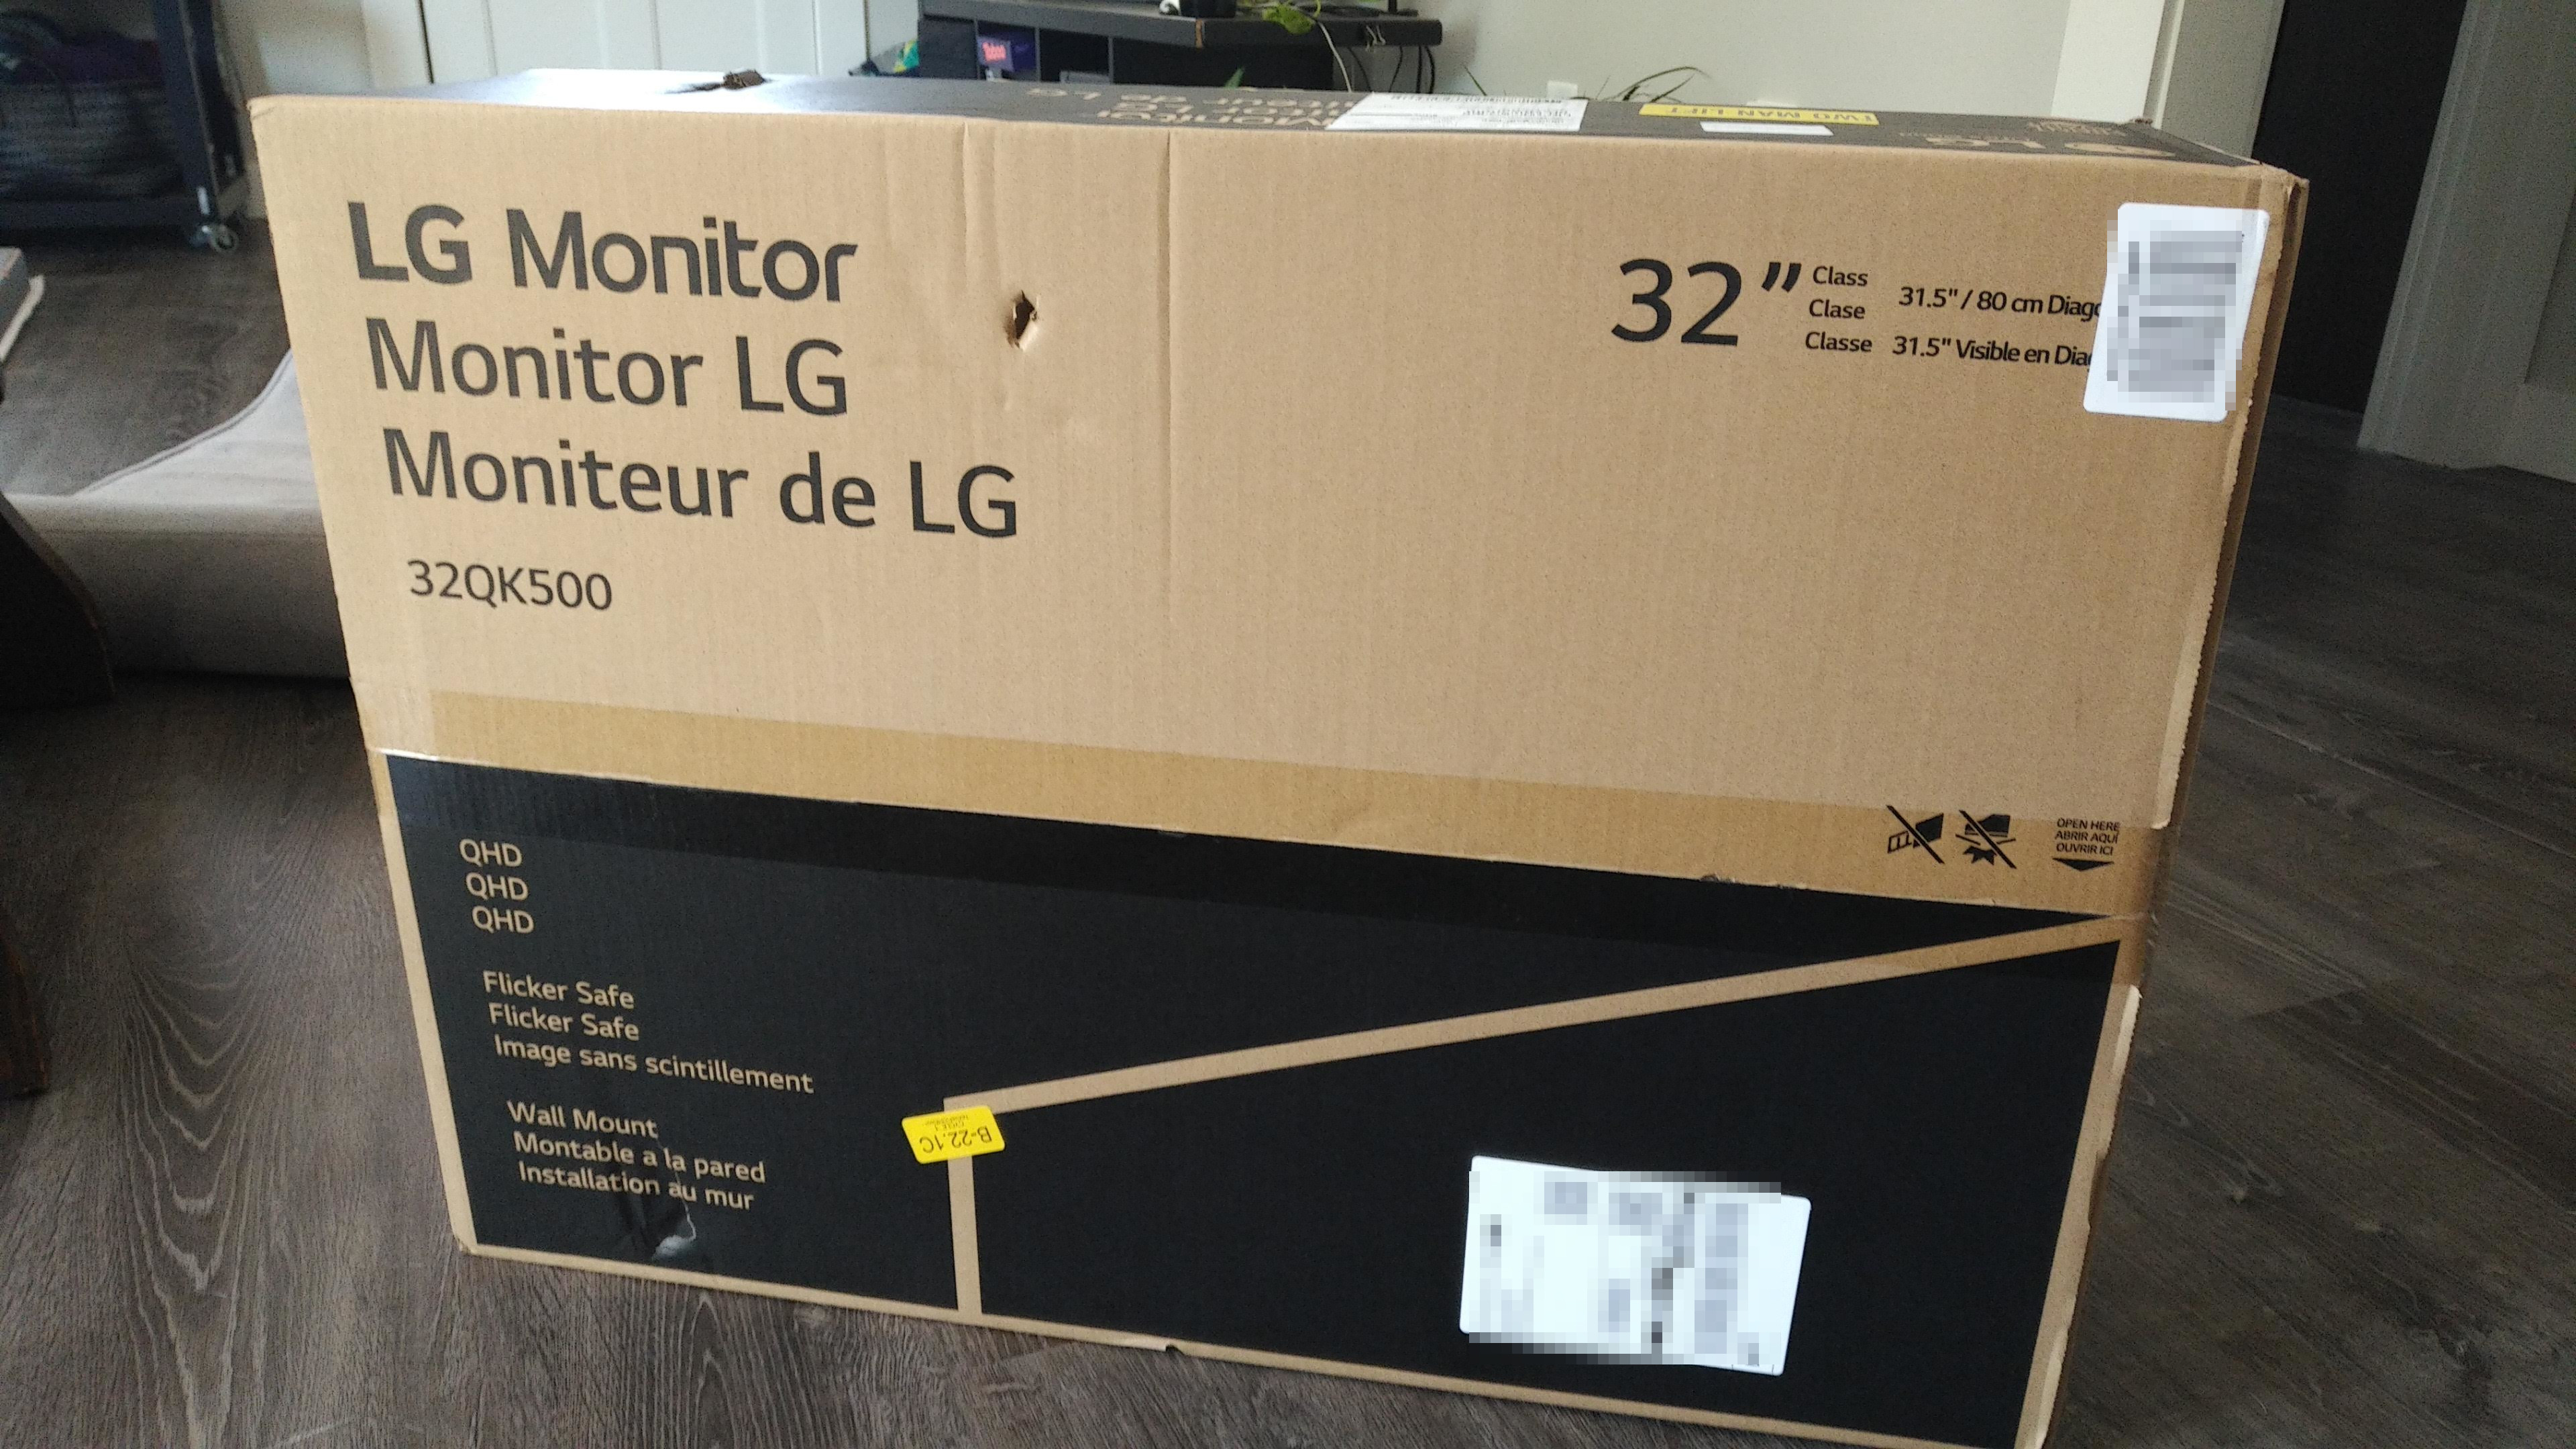 New monitor box